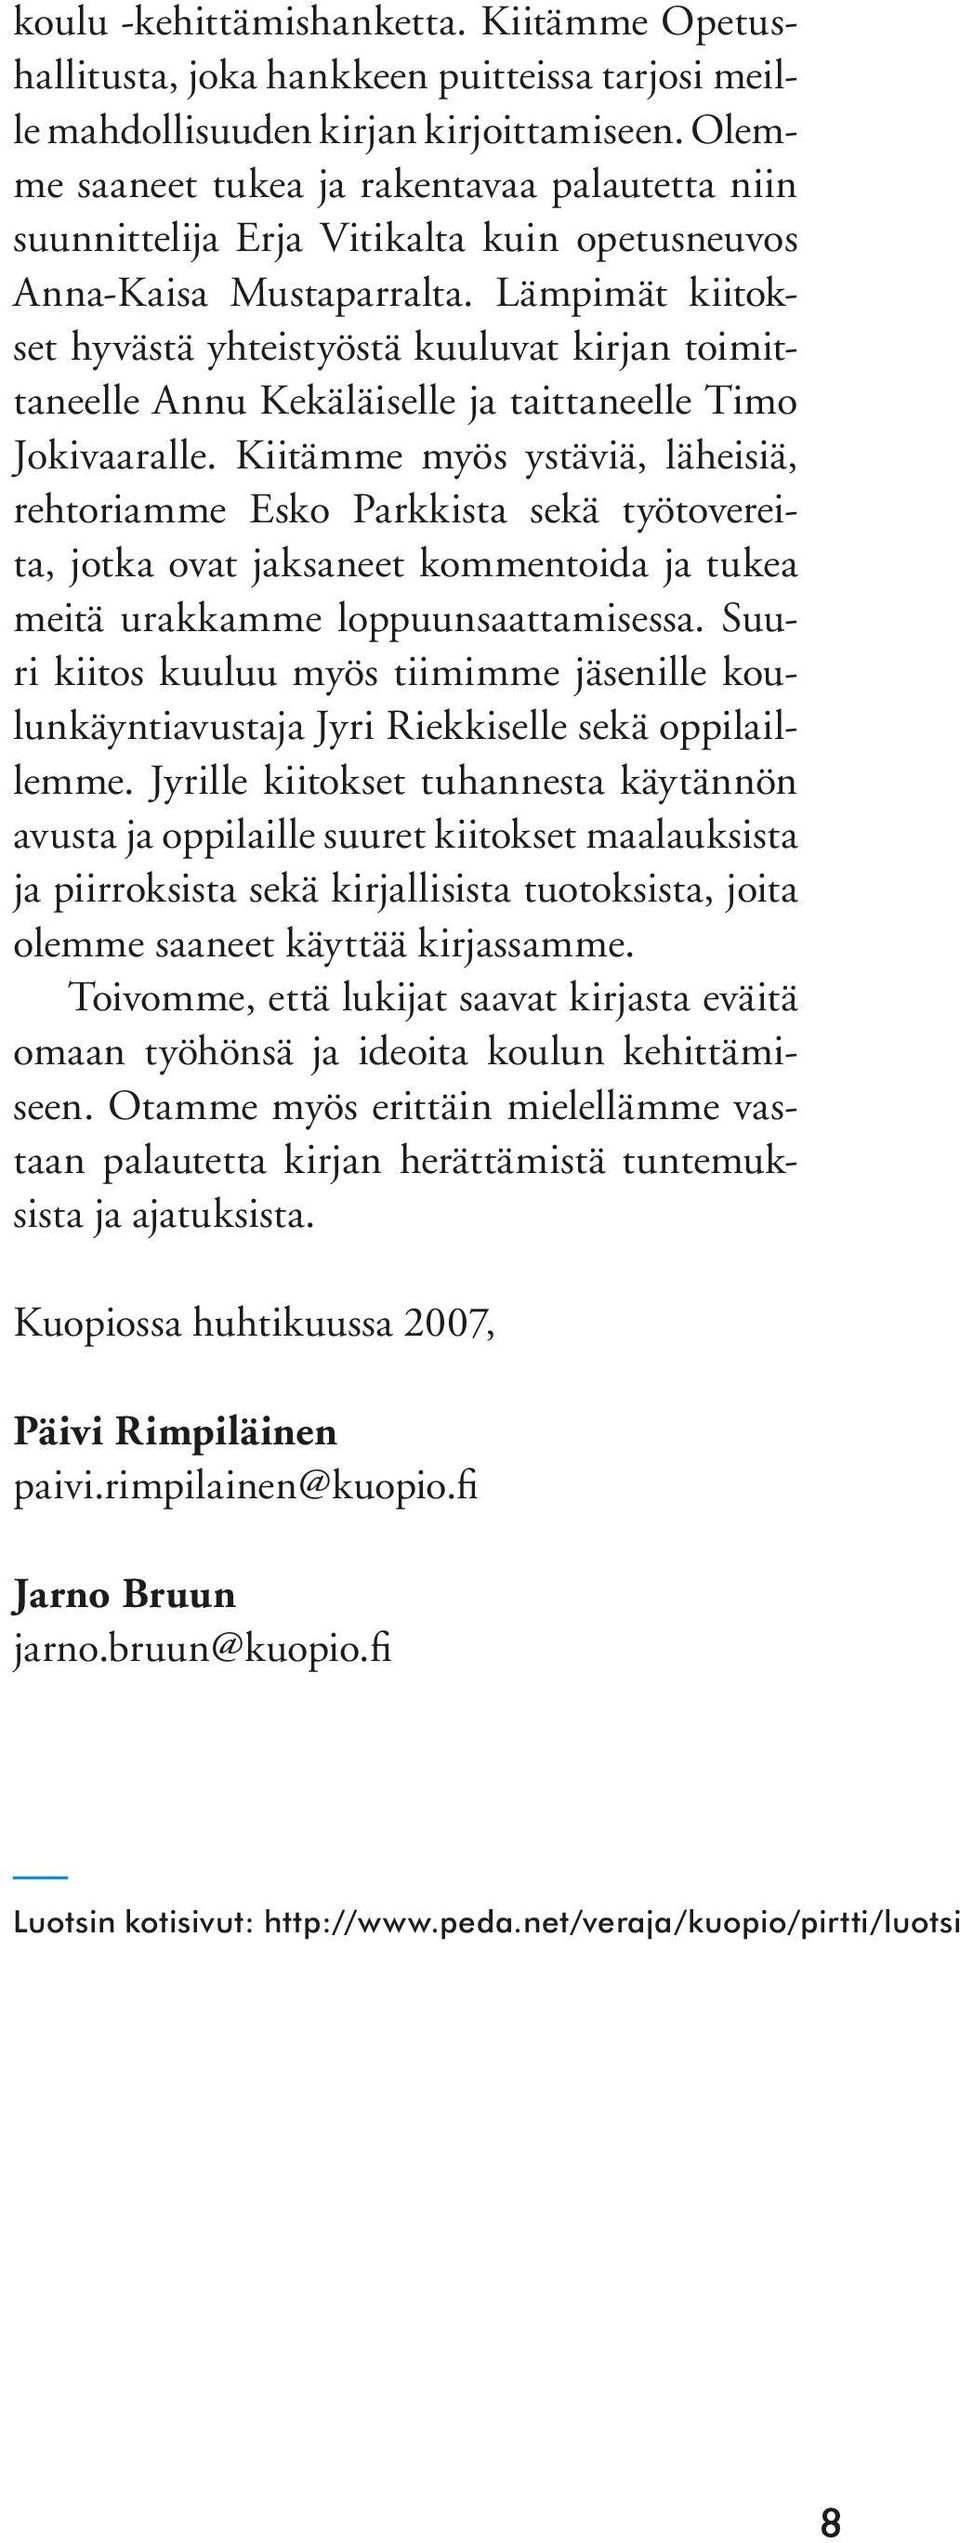 Lämpimät kiitokset hyvästä yhteistyöstä kuuluvat kirjan toimittaneelle Annu Kekäläiselle ja taittaneelle Timo Jokivaaralle.